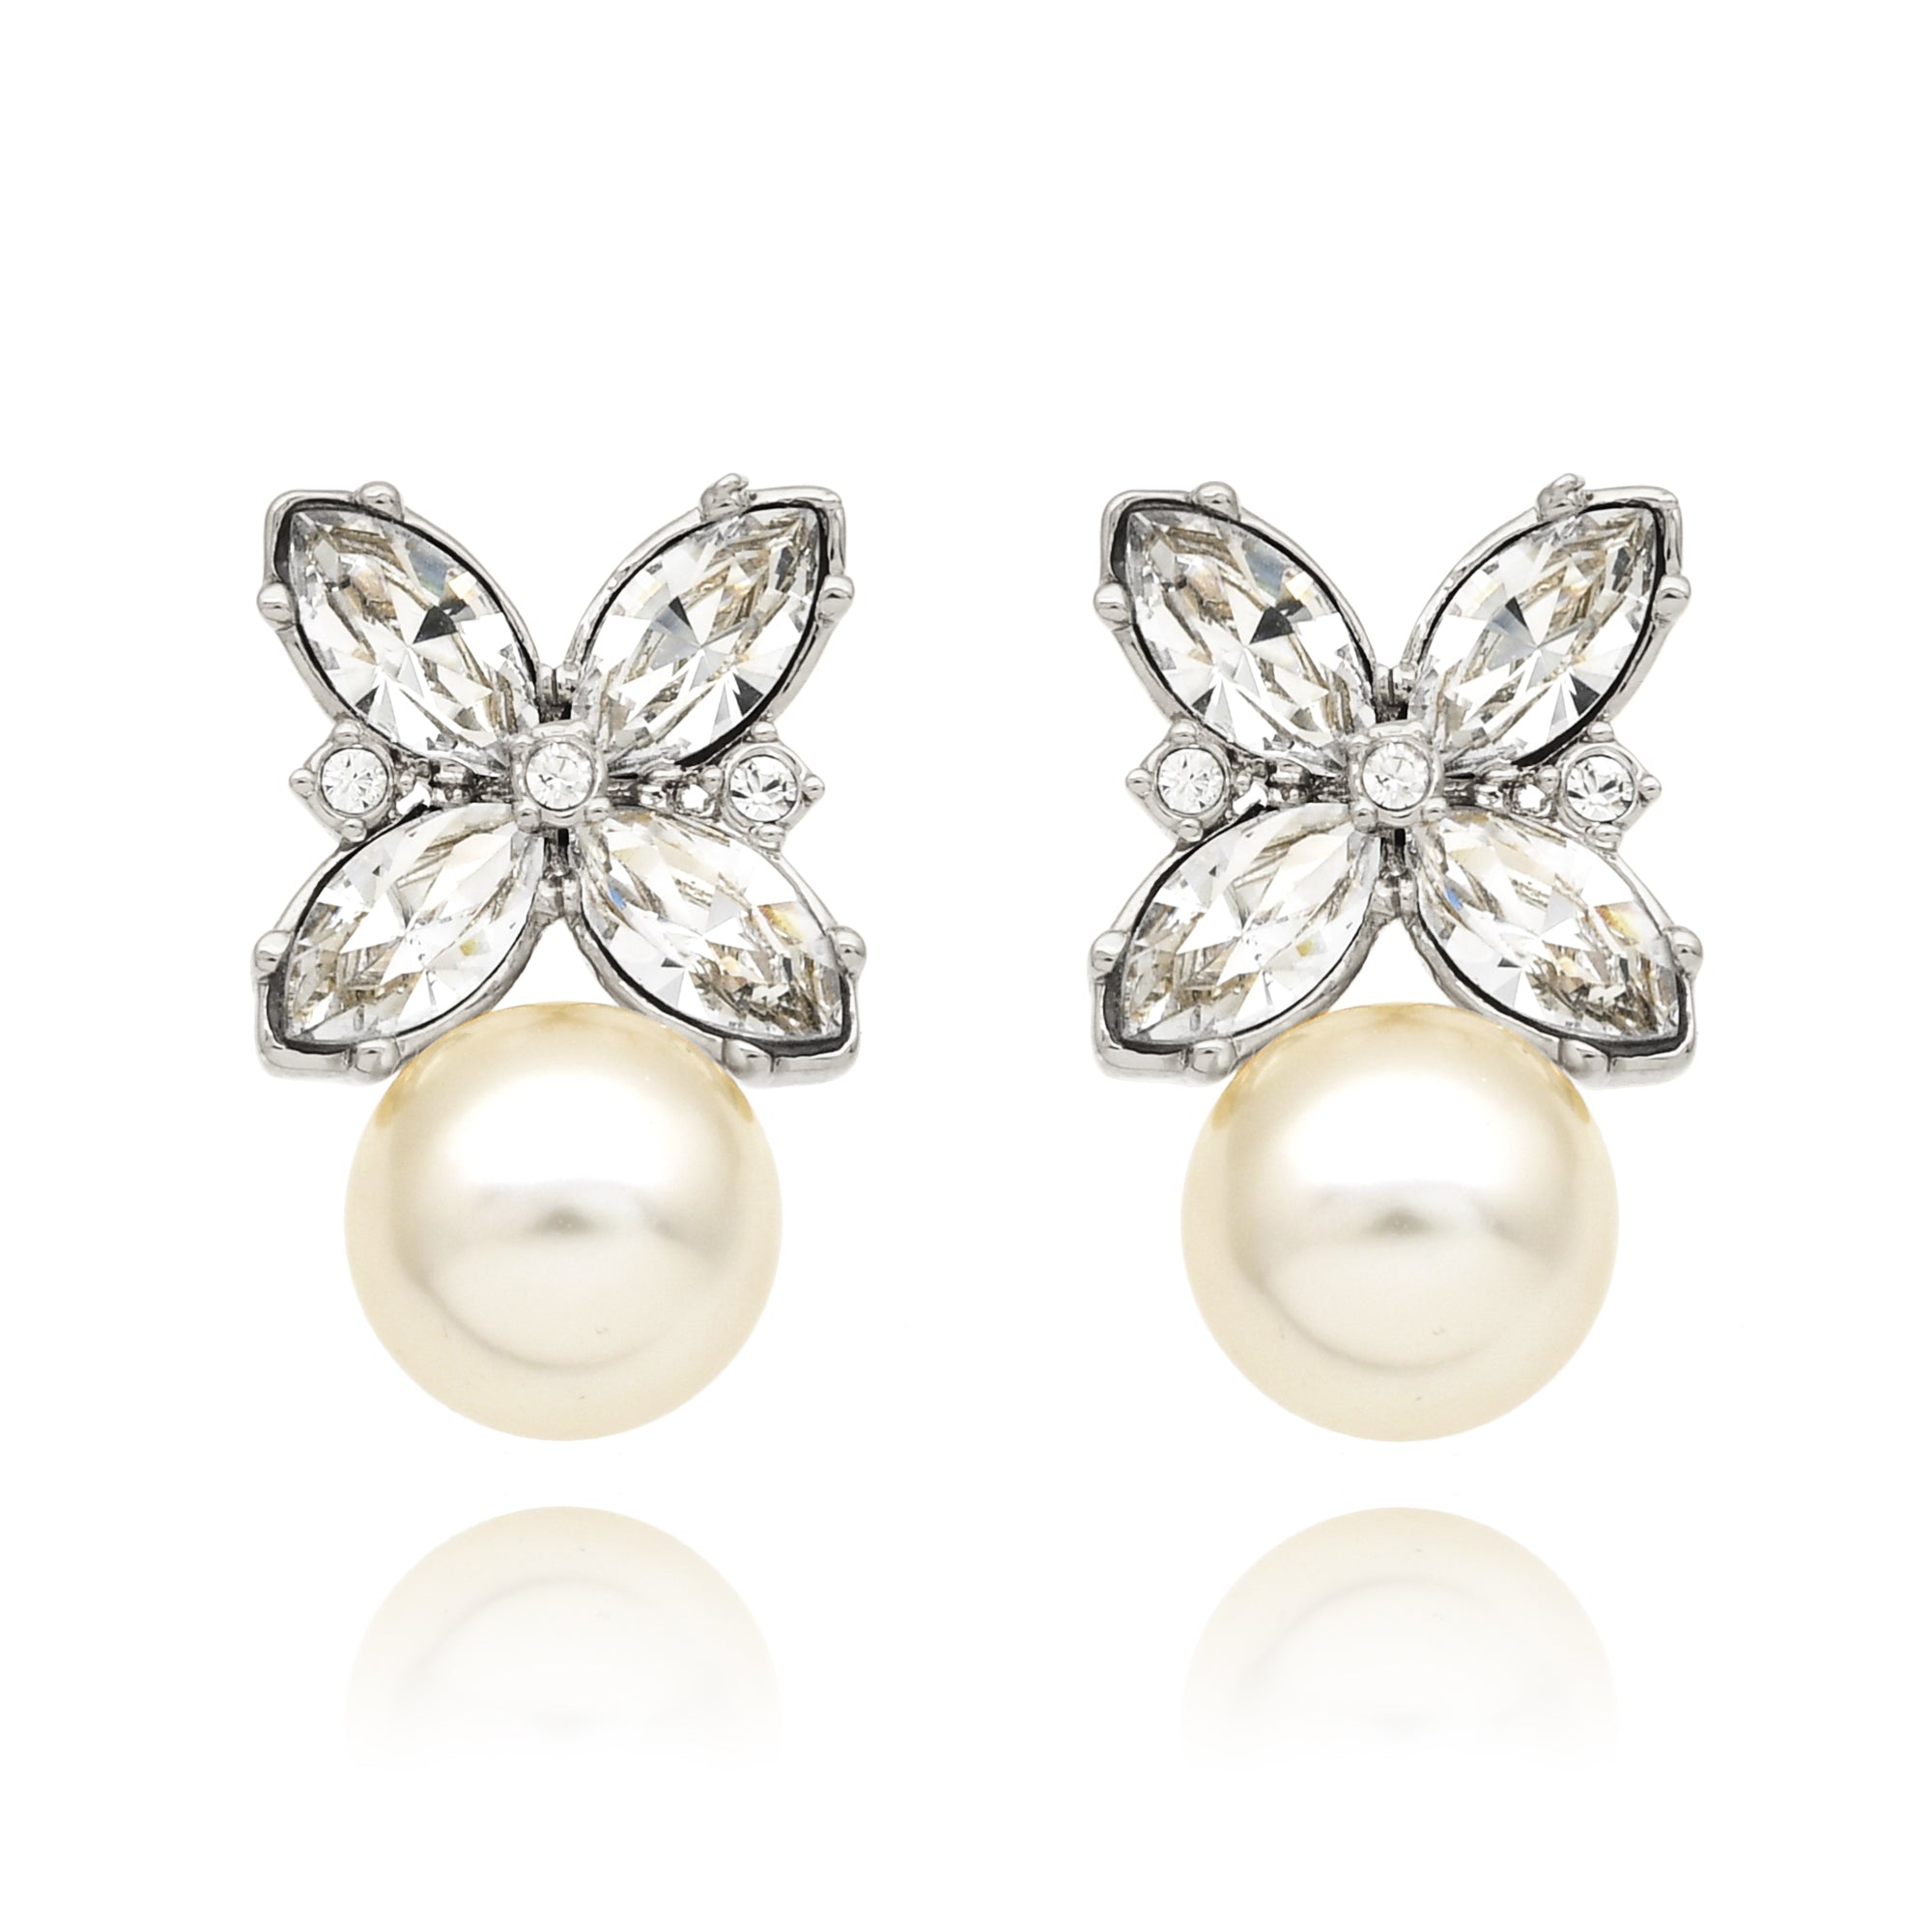 Perlene earrings